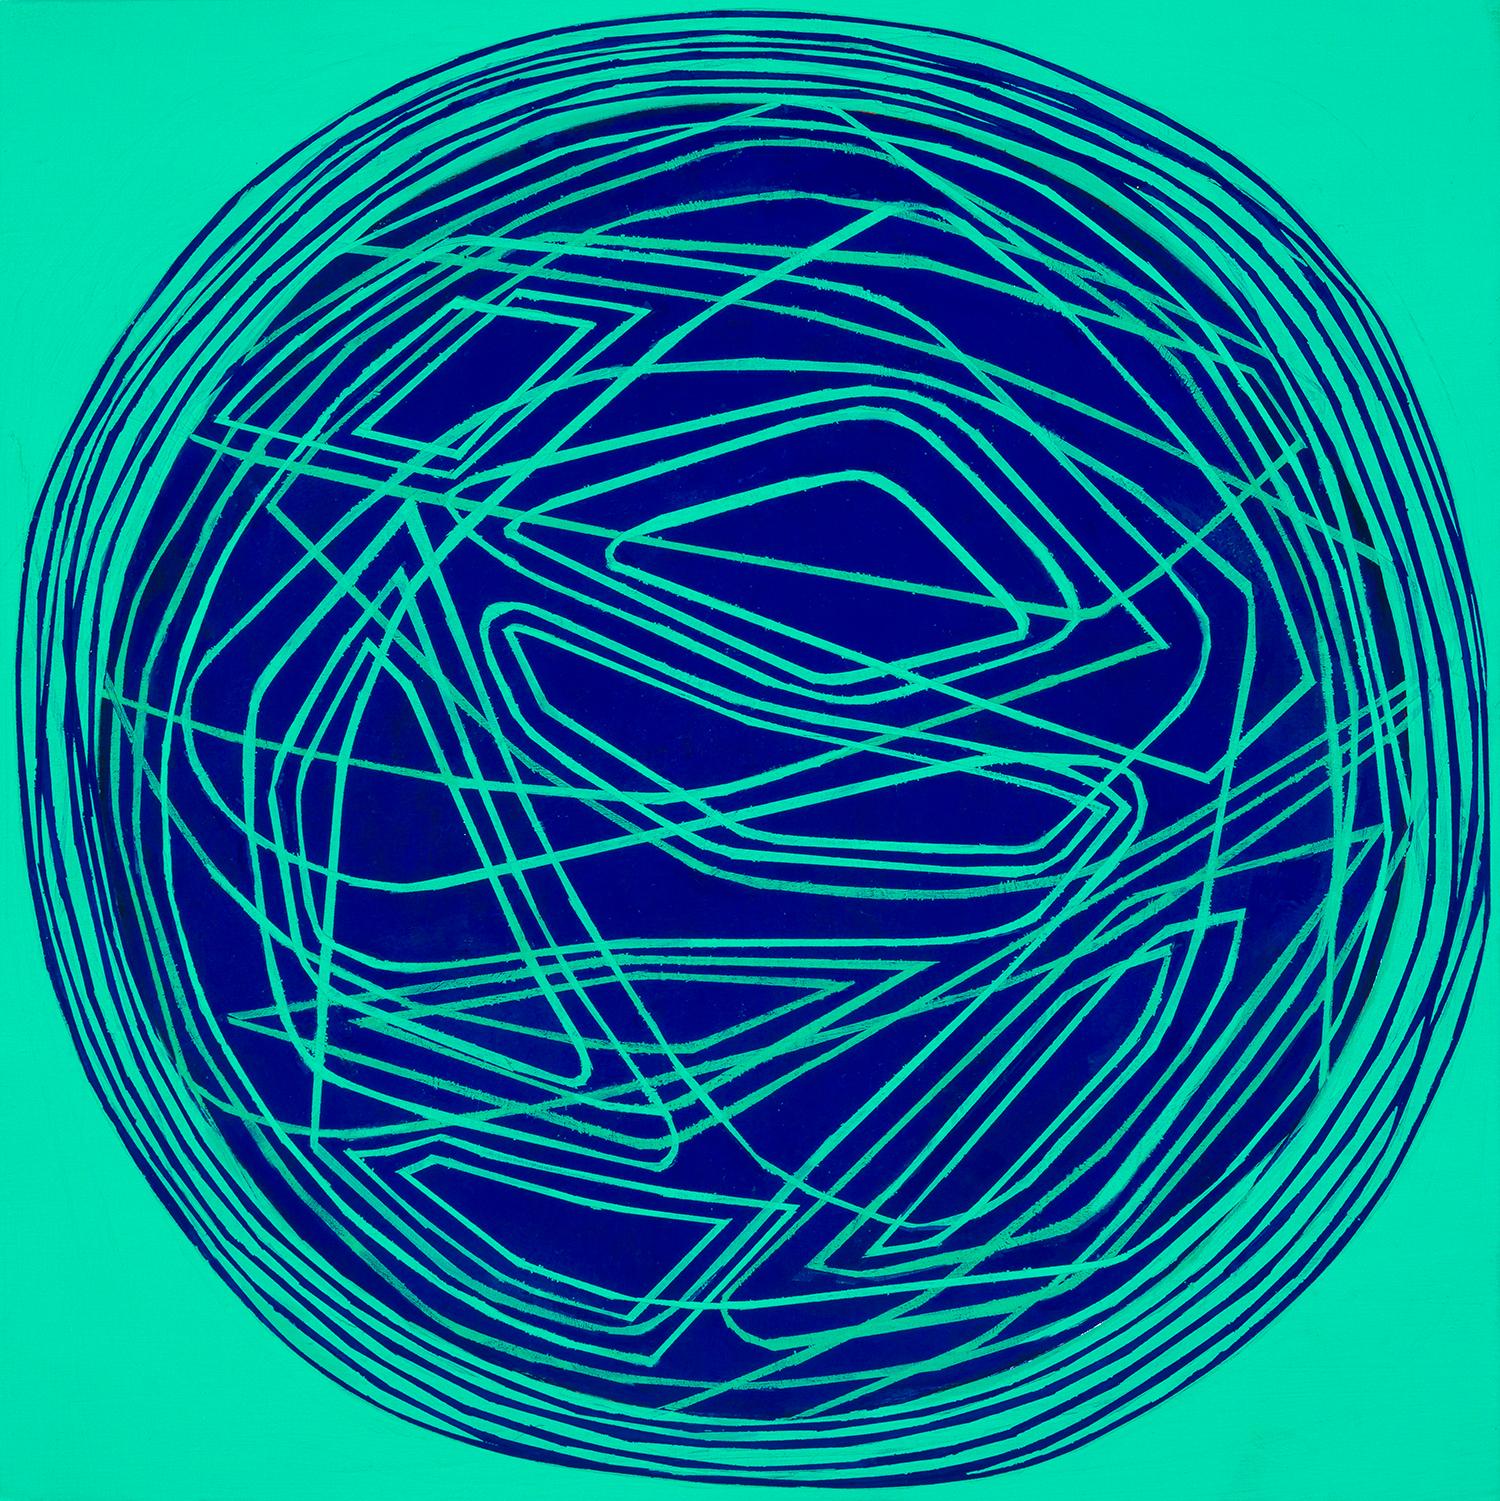 Rundes und rundes: kleines abstraktes Ölgemälde mit kreisförmigen blauen Linien auf Grün-Blau auf Grün-Blau